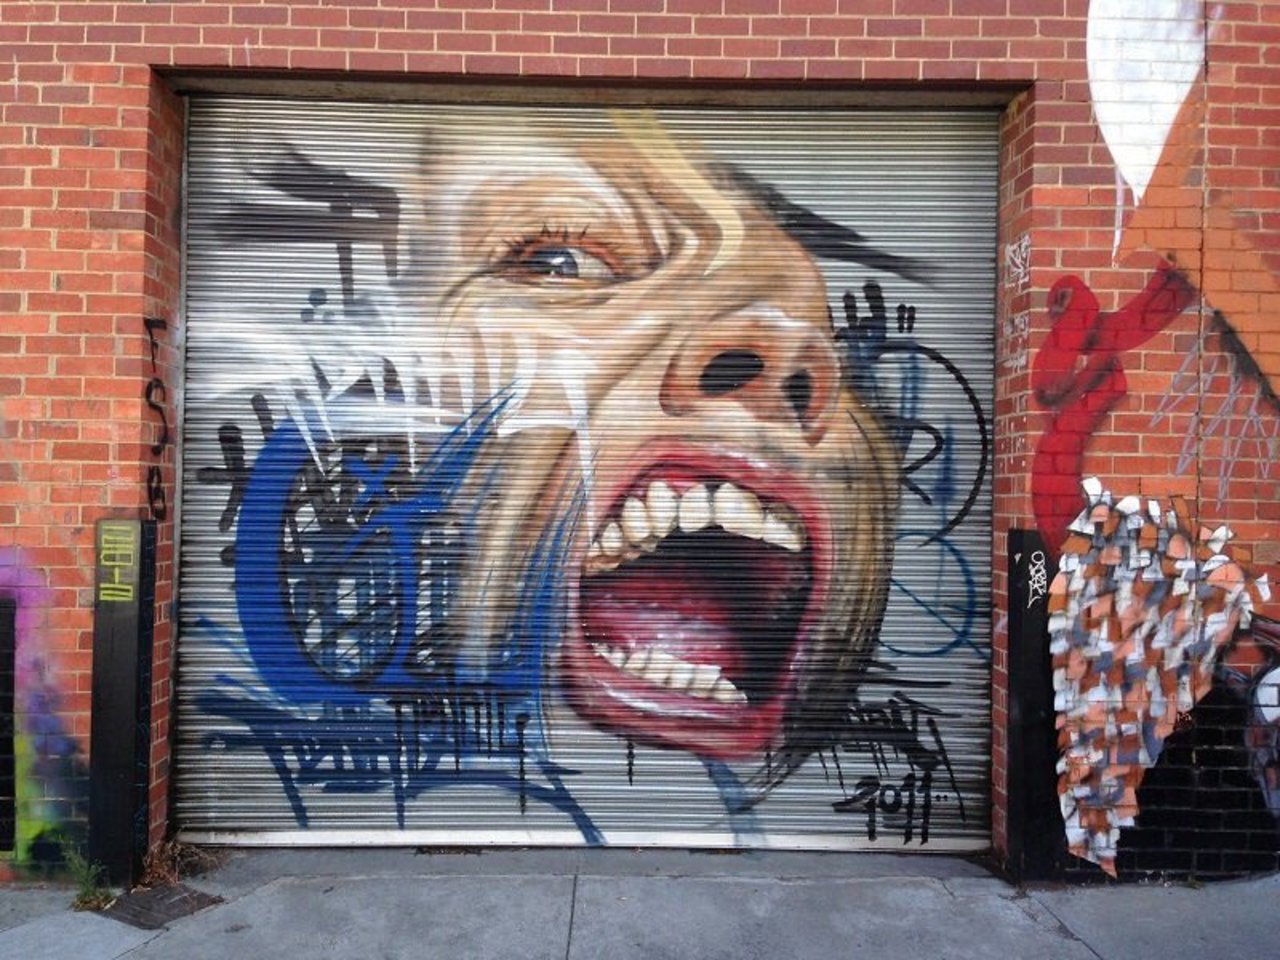 Mural by Adnate #Melbourne #Australia #mural #Streetart #urbanart #graffiti #mural #art https://t.co/nyX99Rzjj4